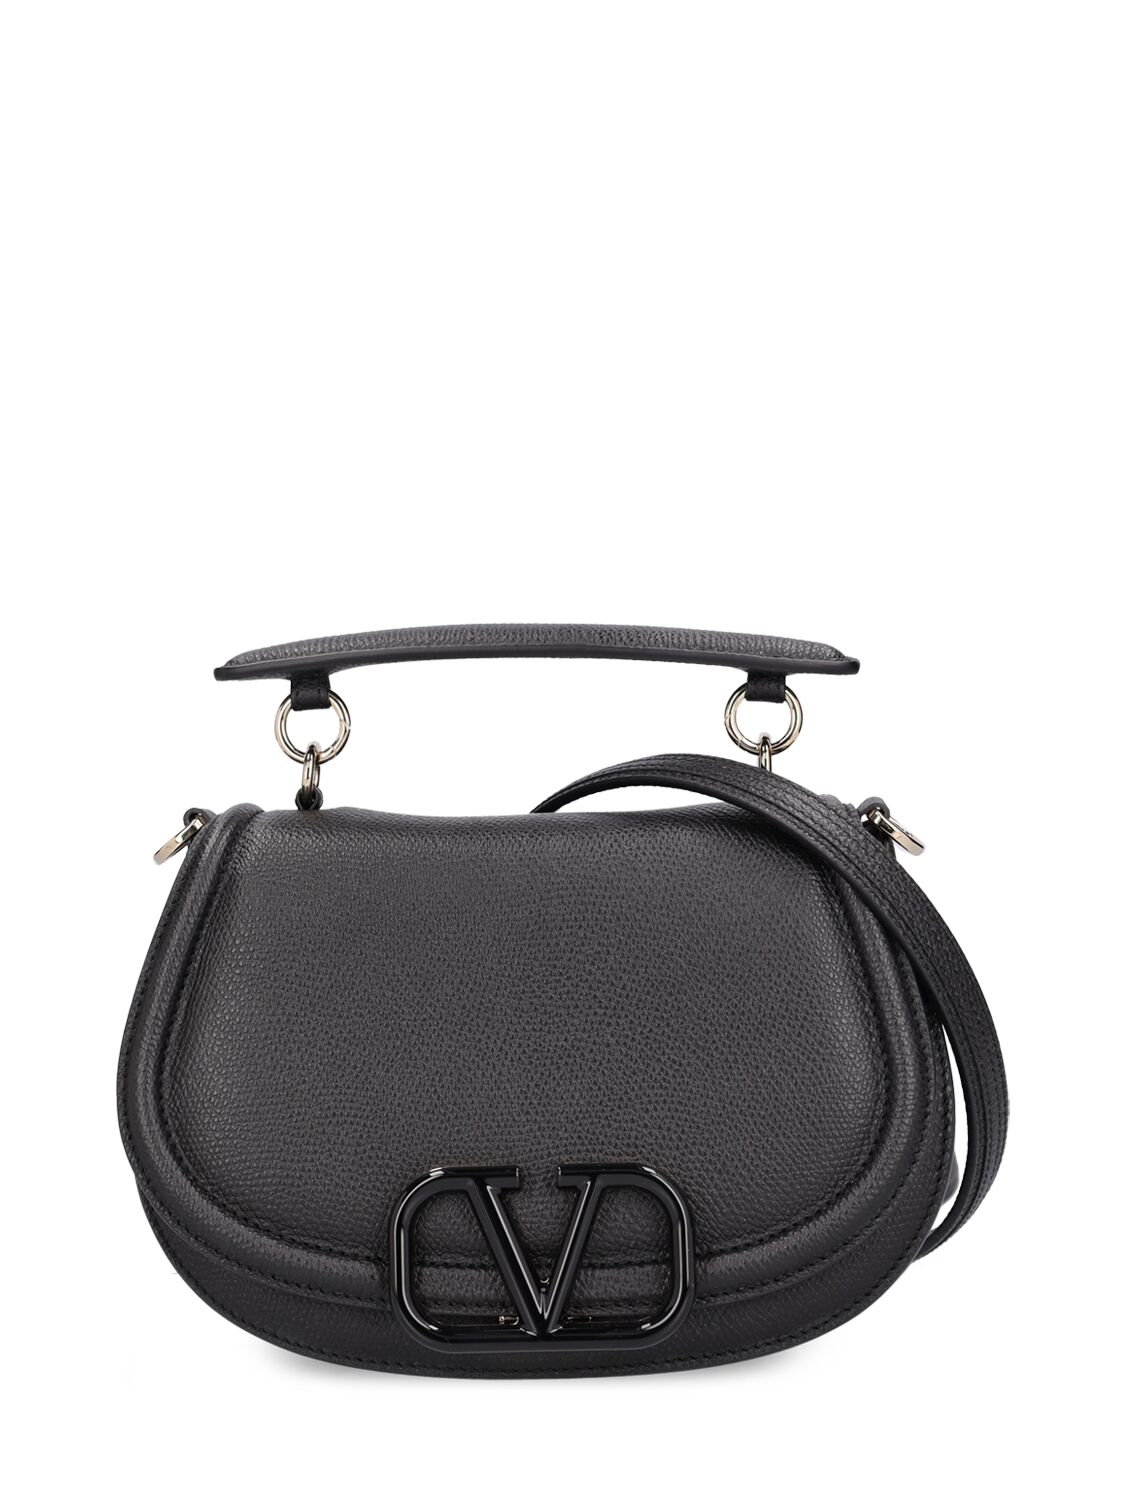 Valentino Garavani V Logo Leather Saddle Bag In Black